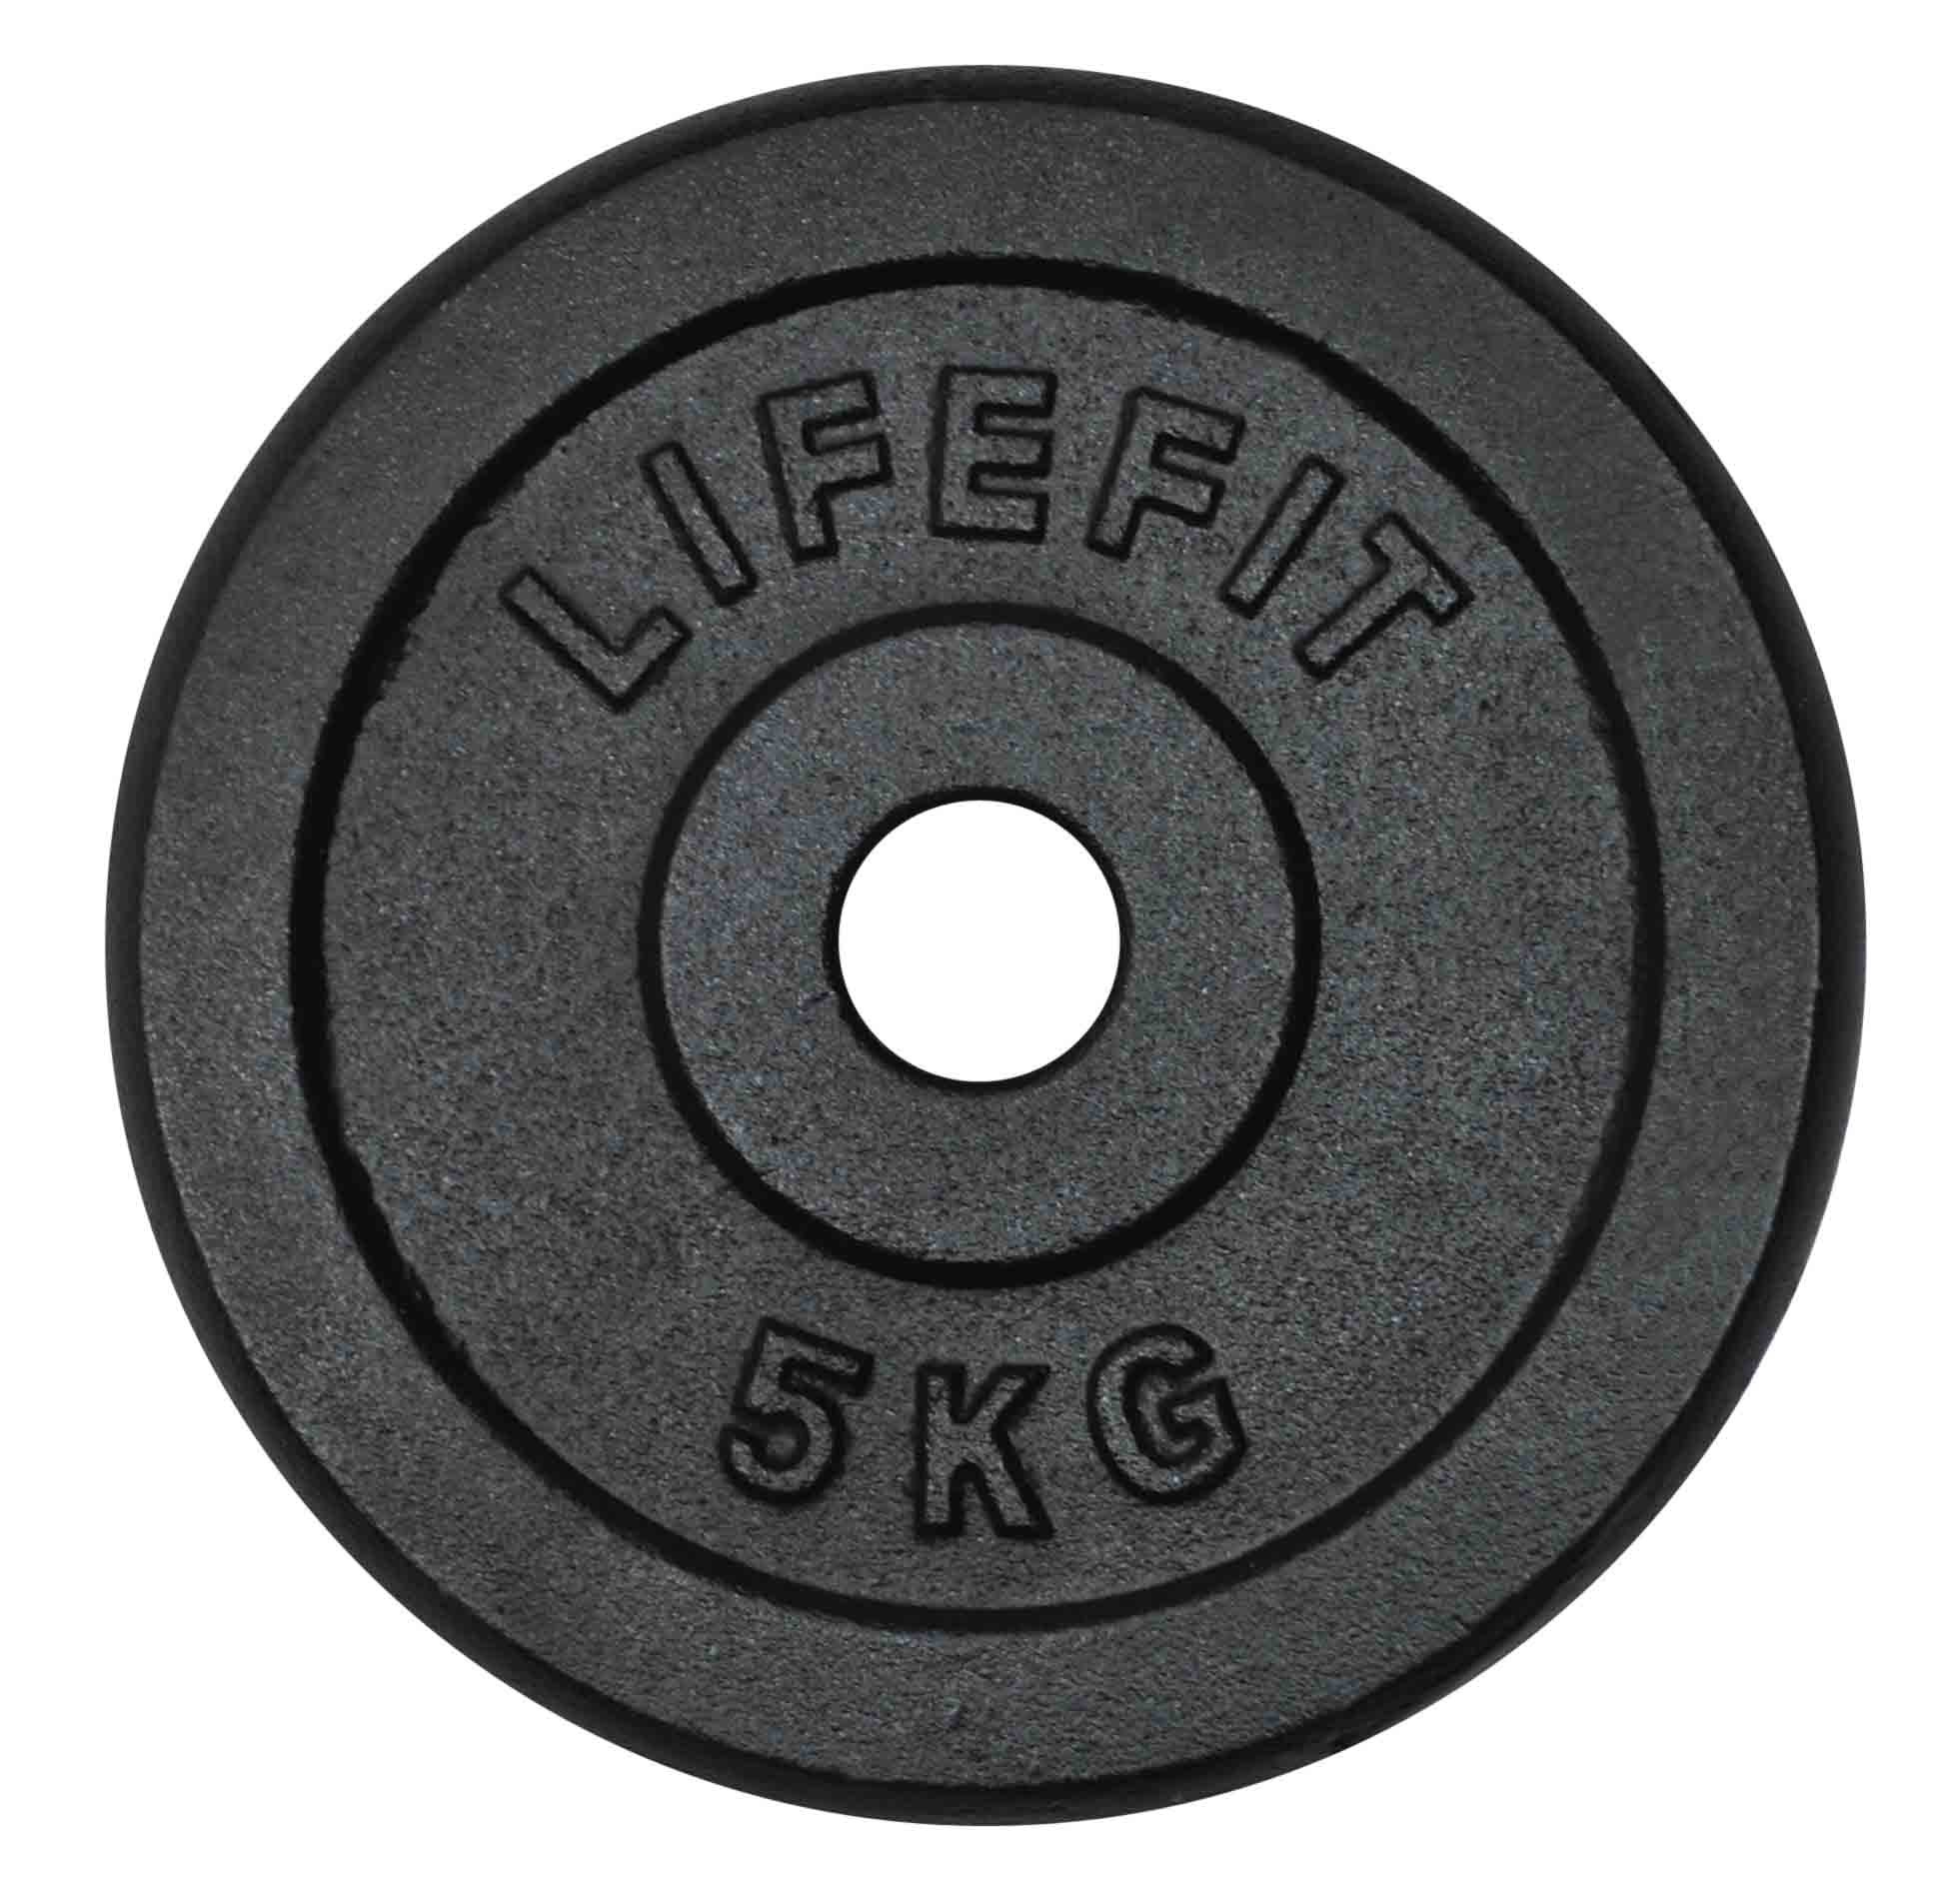 Kotouč LIFEFIT 5kg, kovový, pro 30mm tyč